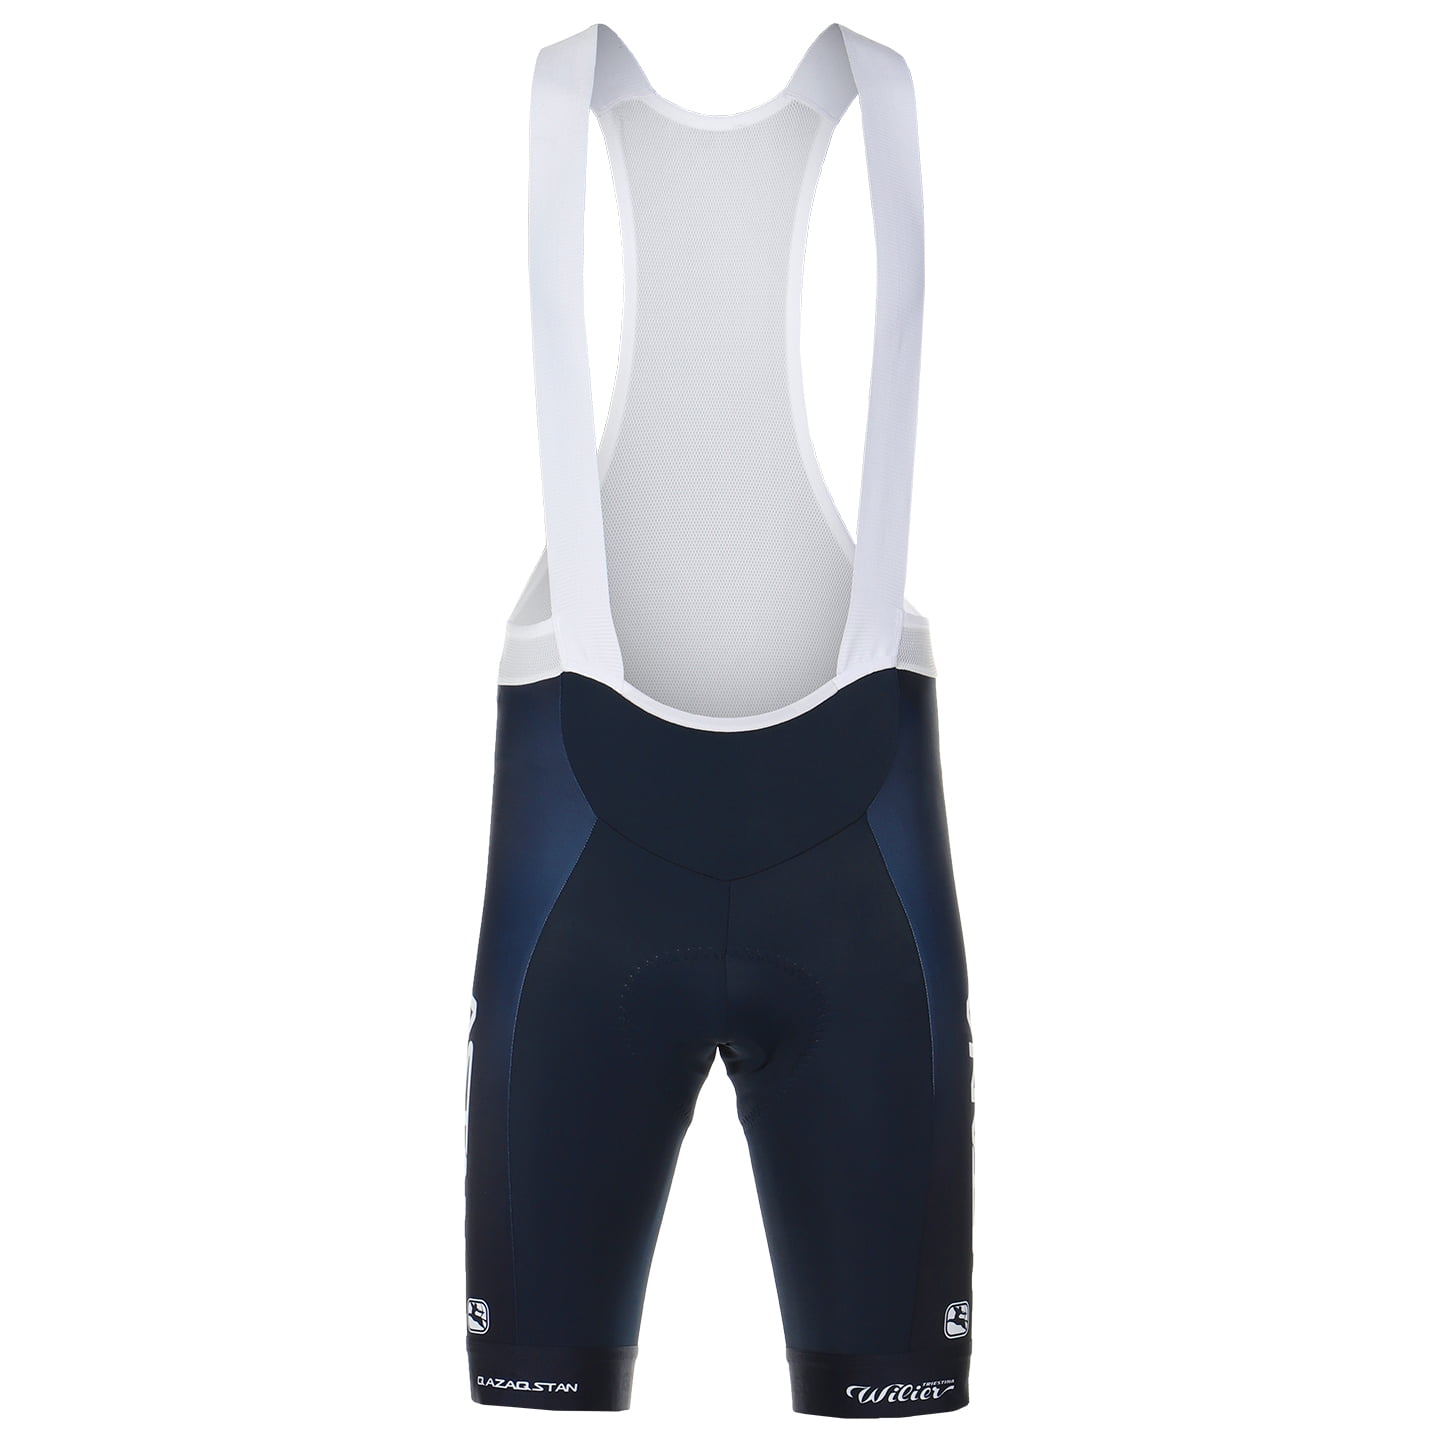 ASTANA QAZAQSTAN TEAM 2023 Bib Shorts, for men, size L, Cycle shorts, Cycling clothing